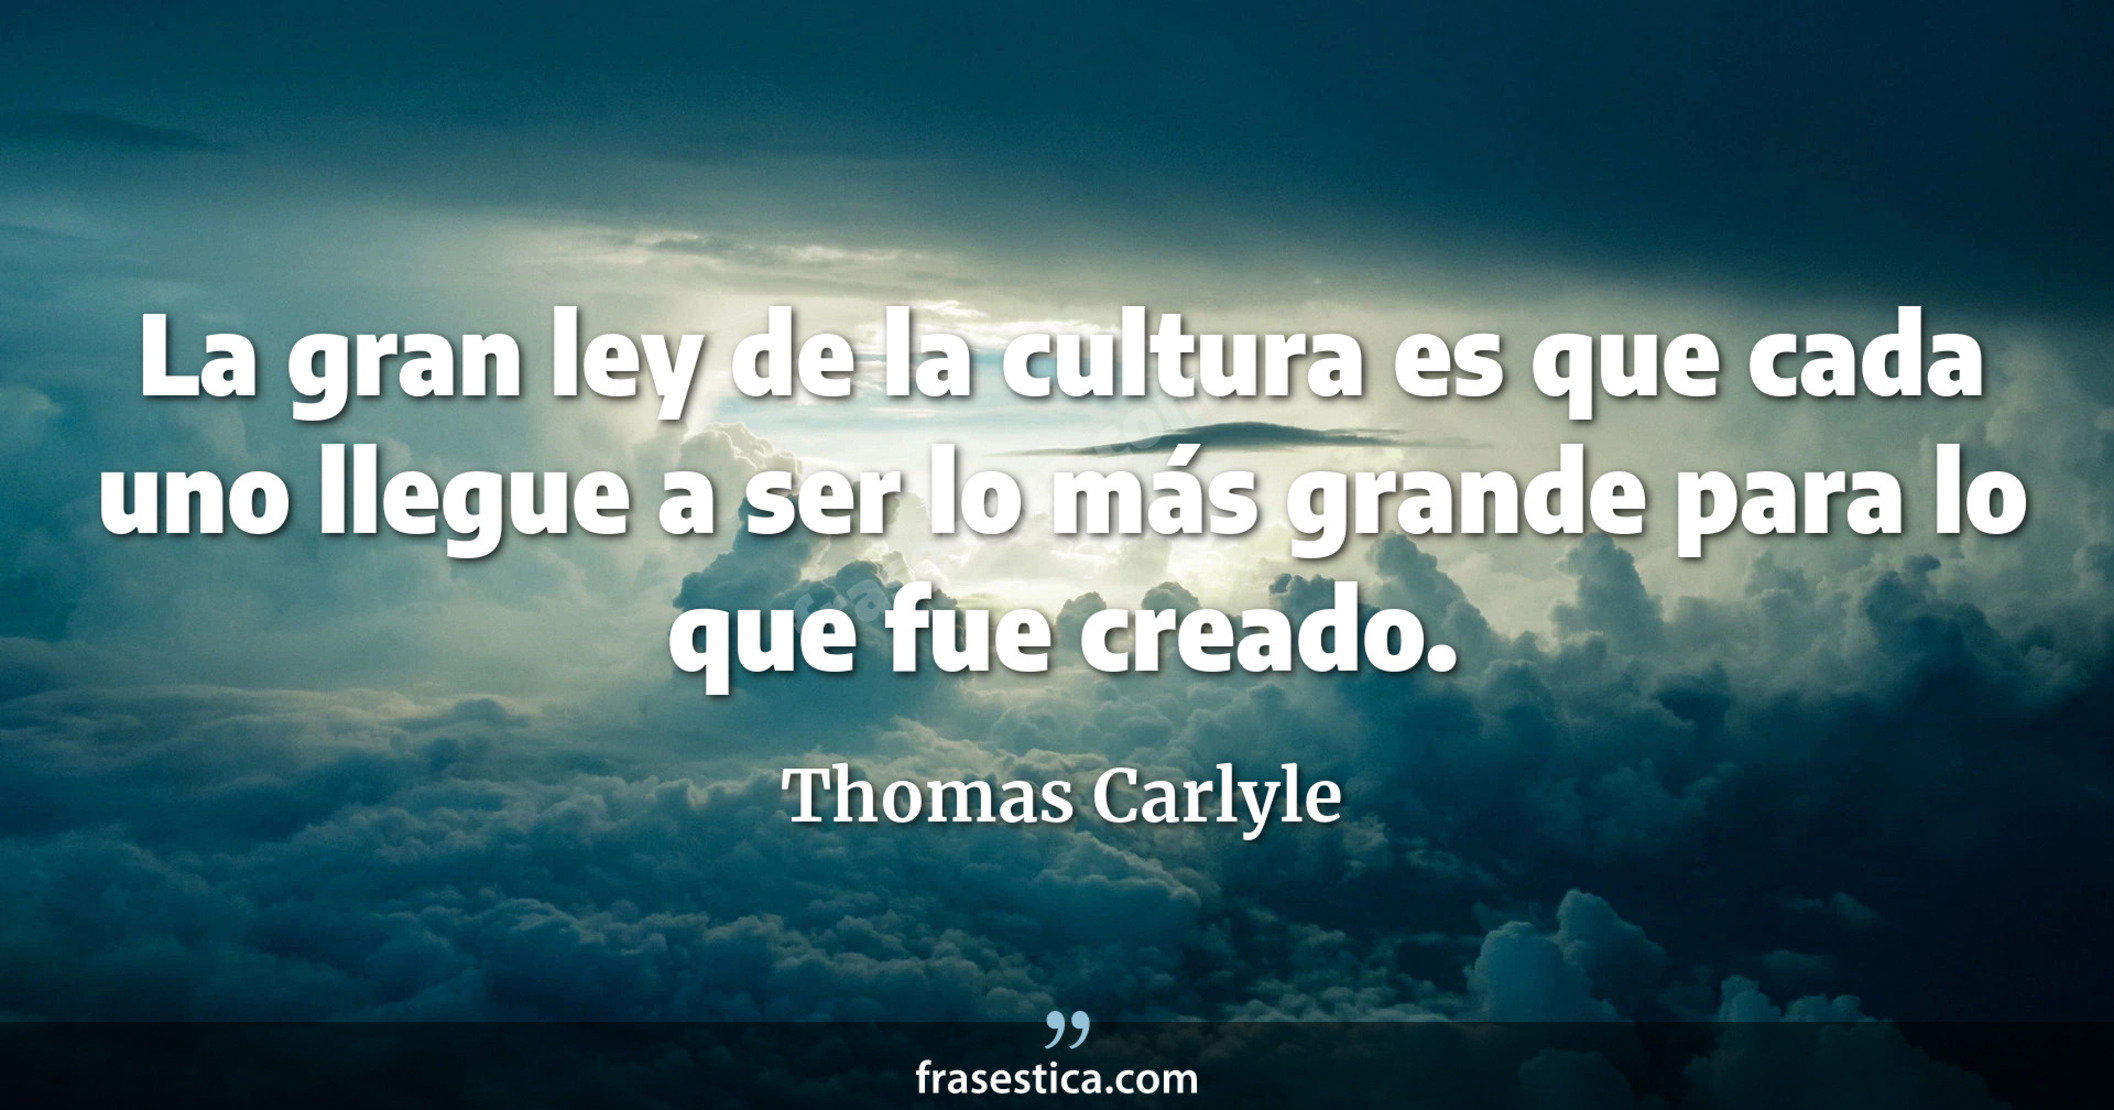 La gran ley de la cultura es que cada uno llegue a ser lo más grande para lo que fue creado. - Thomas Carlyle